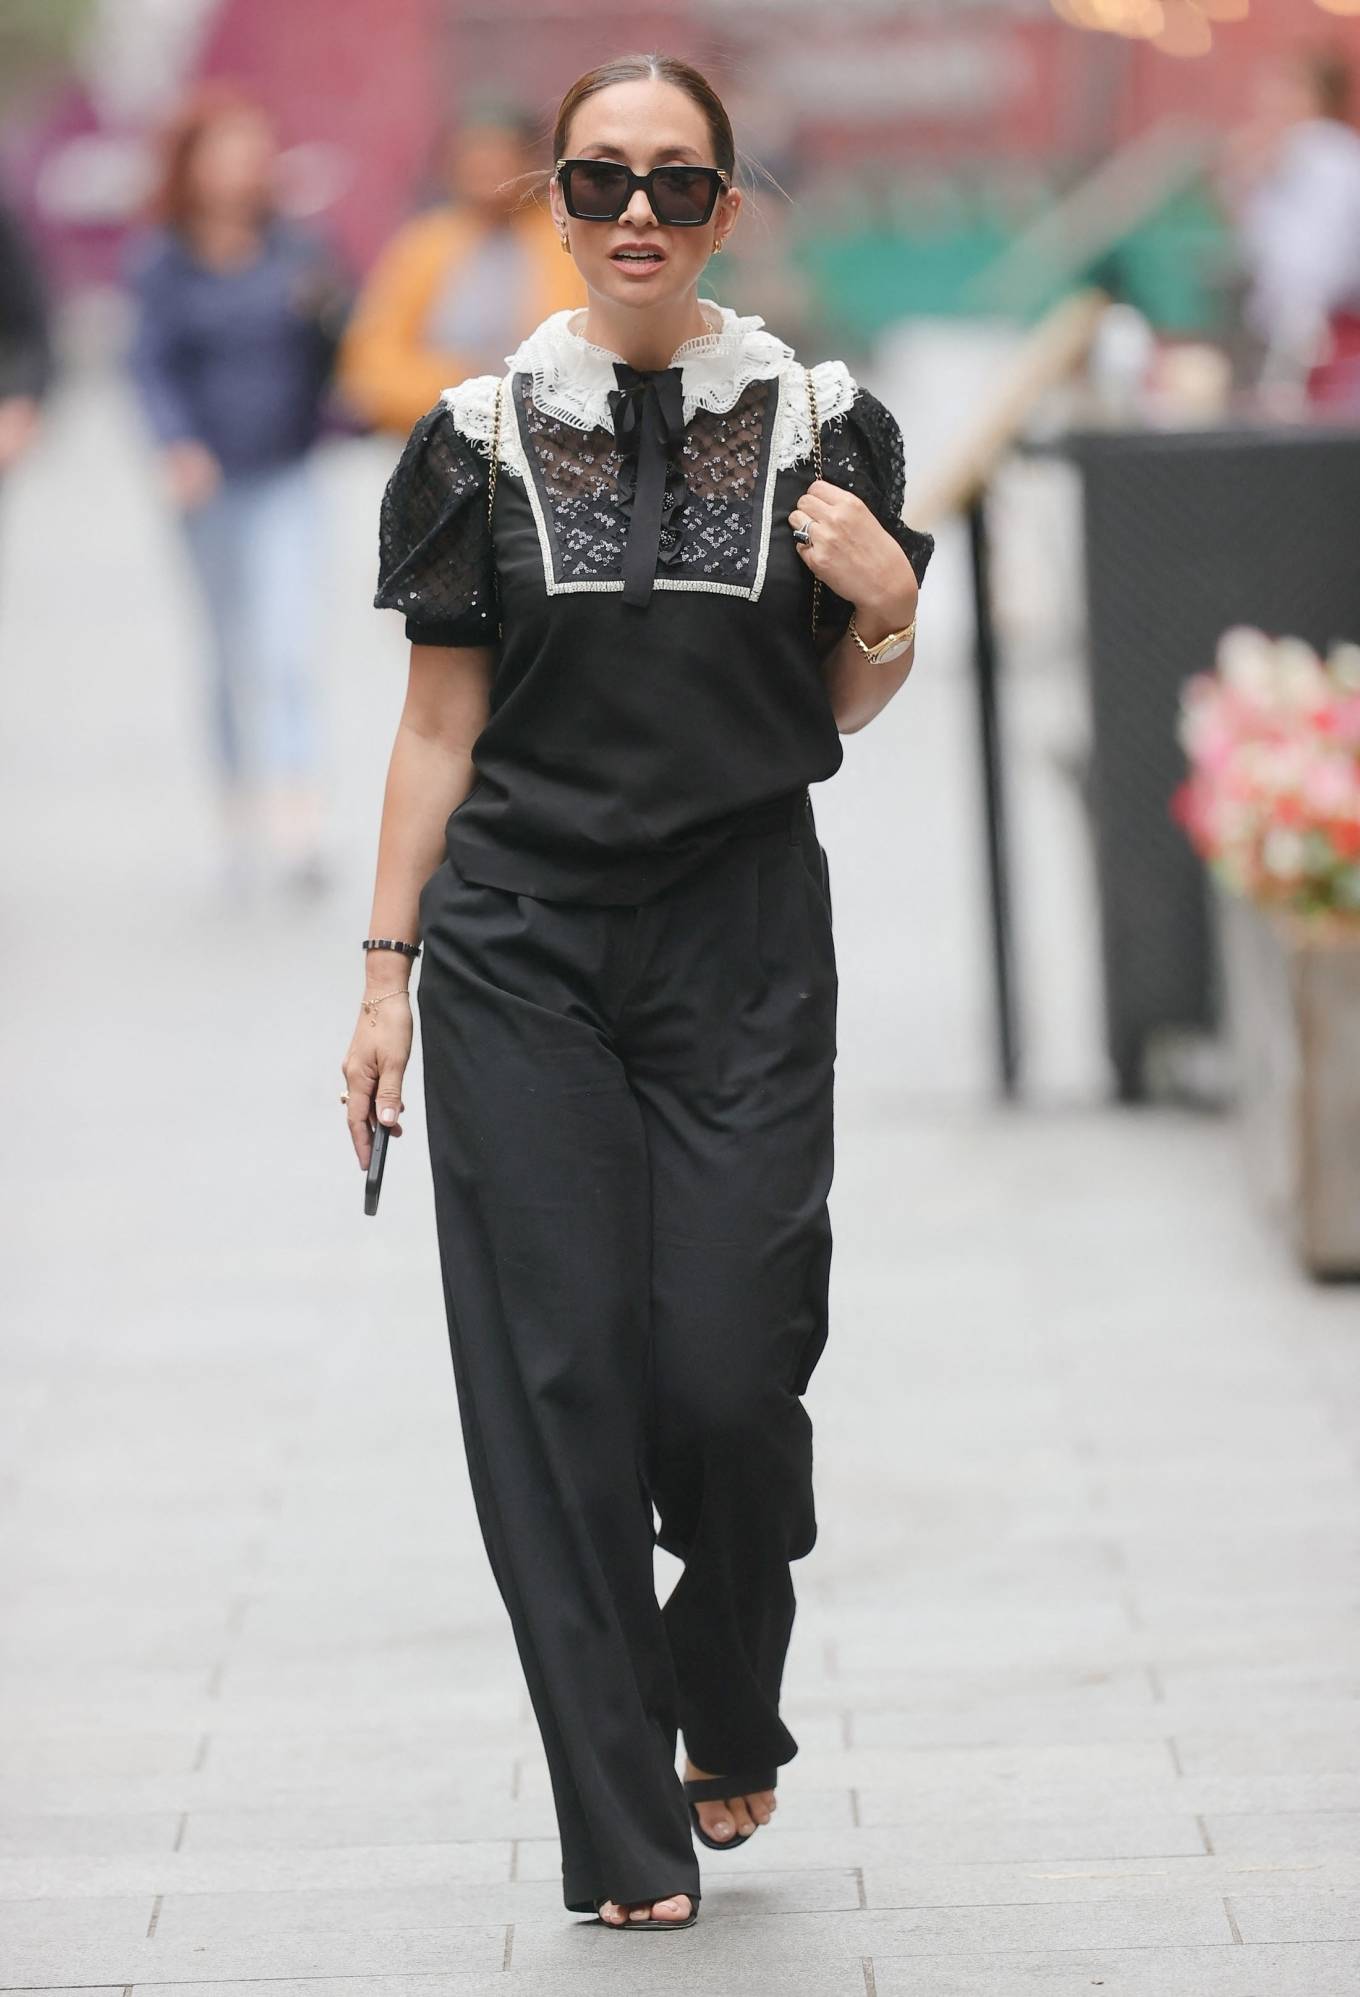 Myleene Klass 2021 : Myleene Klass – Out in a monochrome top and black pants in London-01